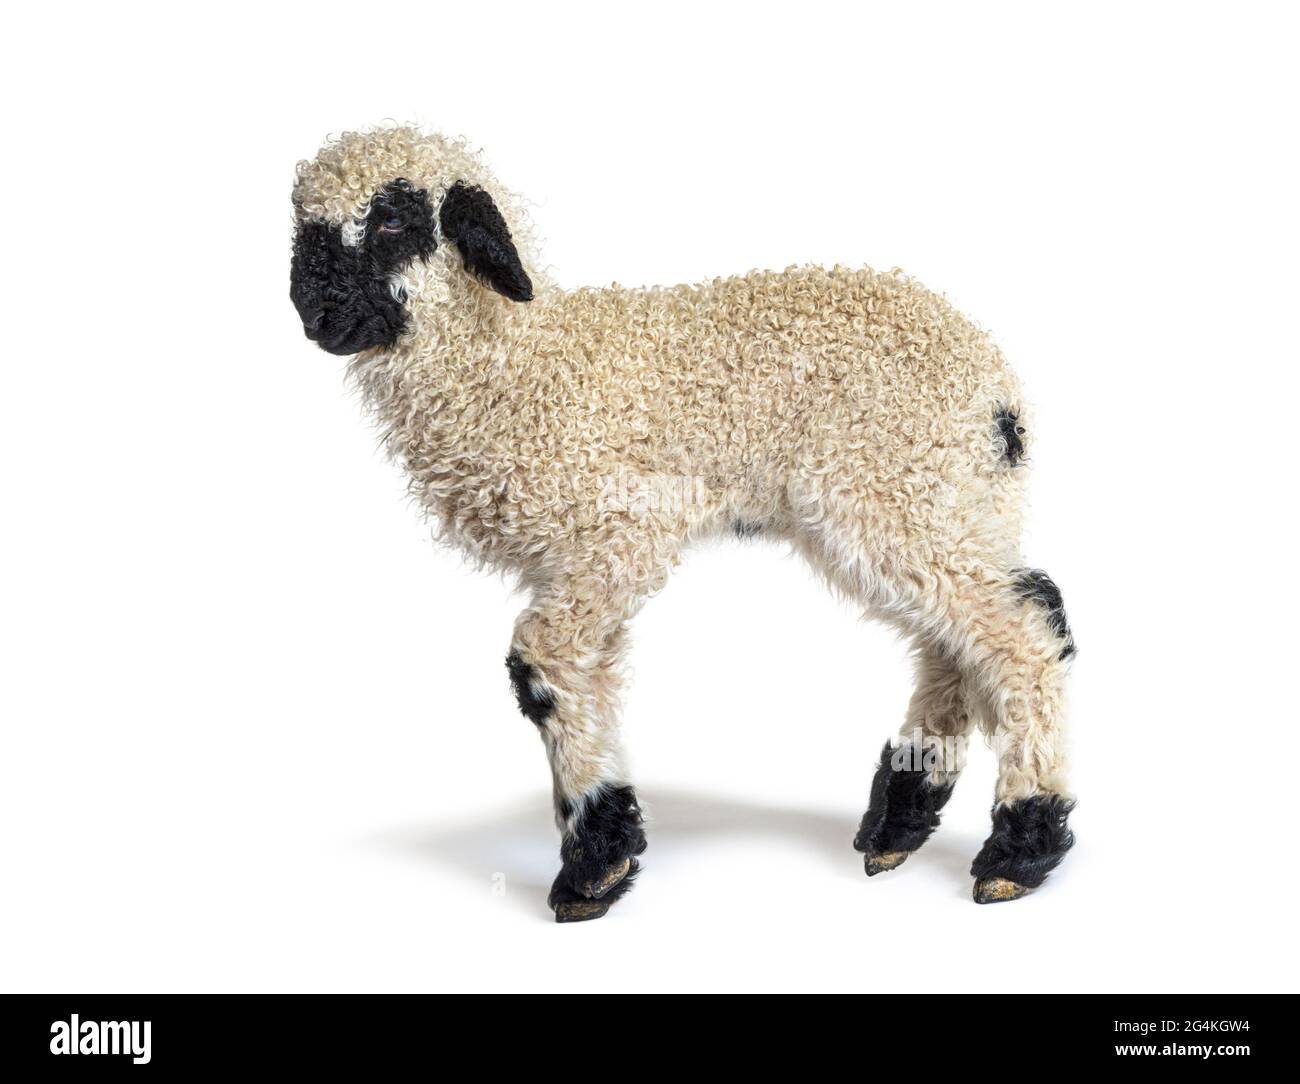 Profil eines lieblichen Lammes Valais Blacknose Schaf drei Wochen Alt Stockfoto